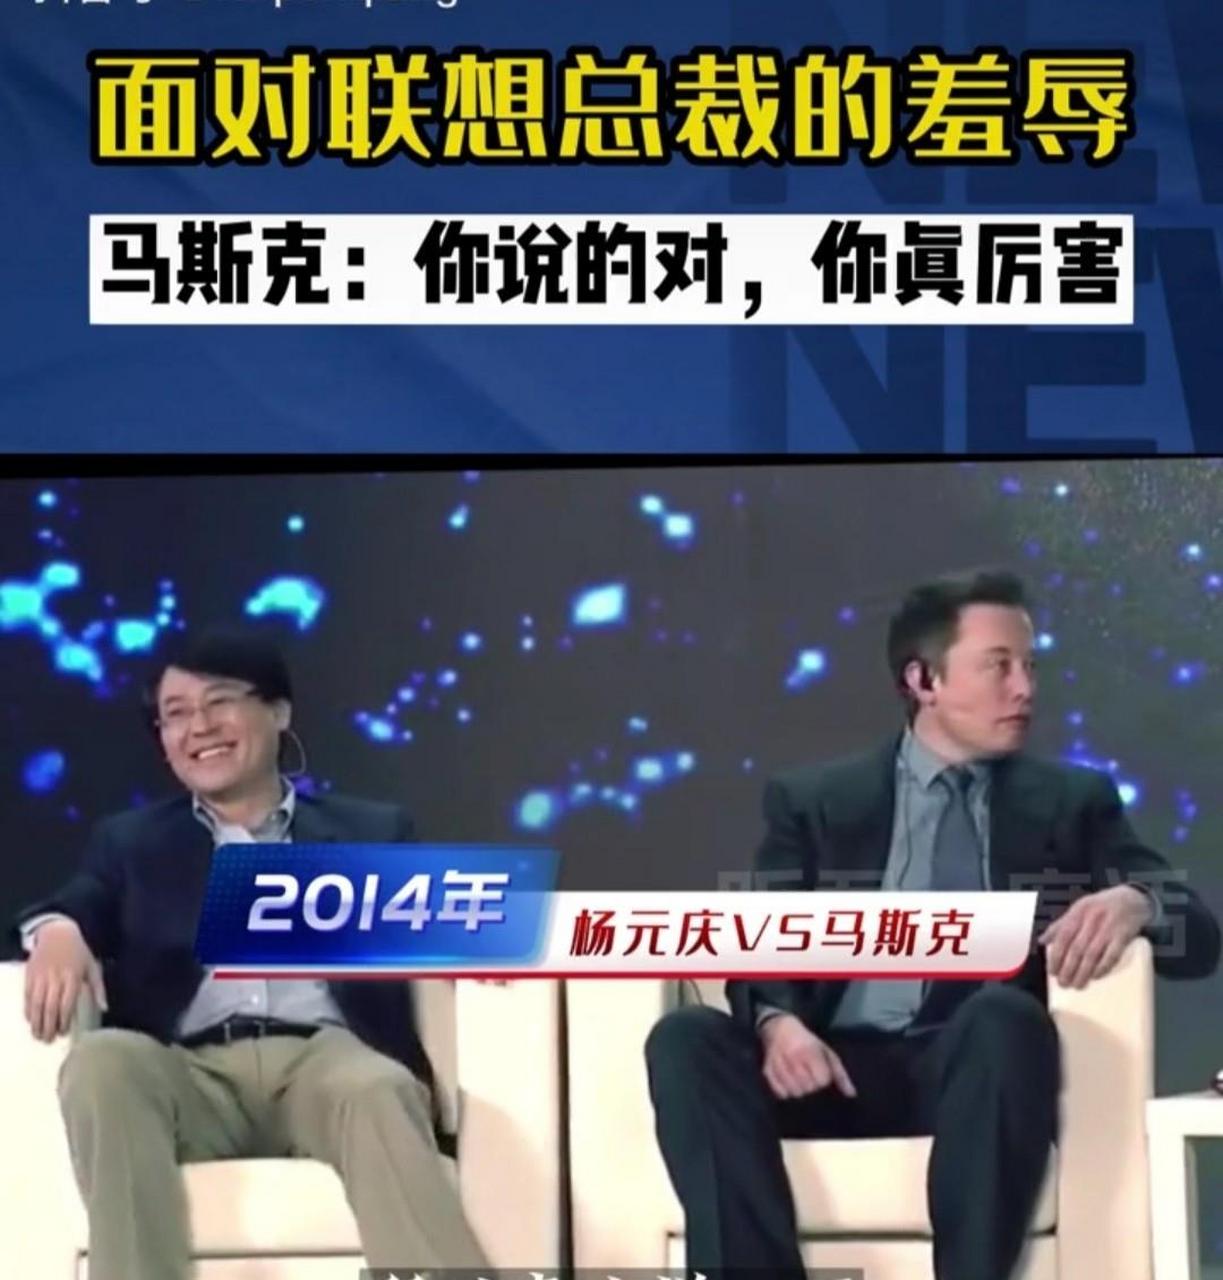 2014 年国内一档节目中,联想总裁杨元庆和马斯克同台对话,杨元庆对